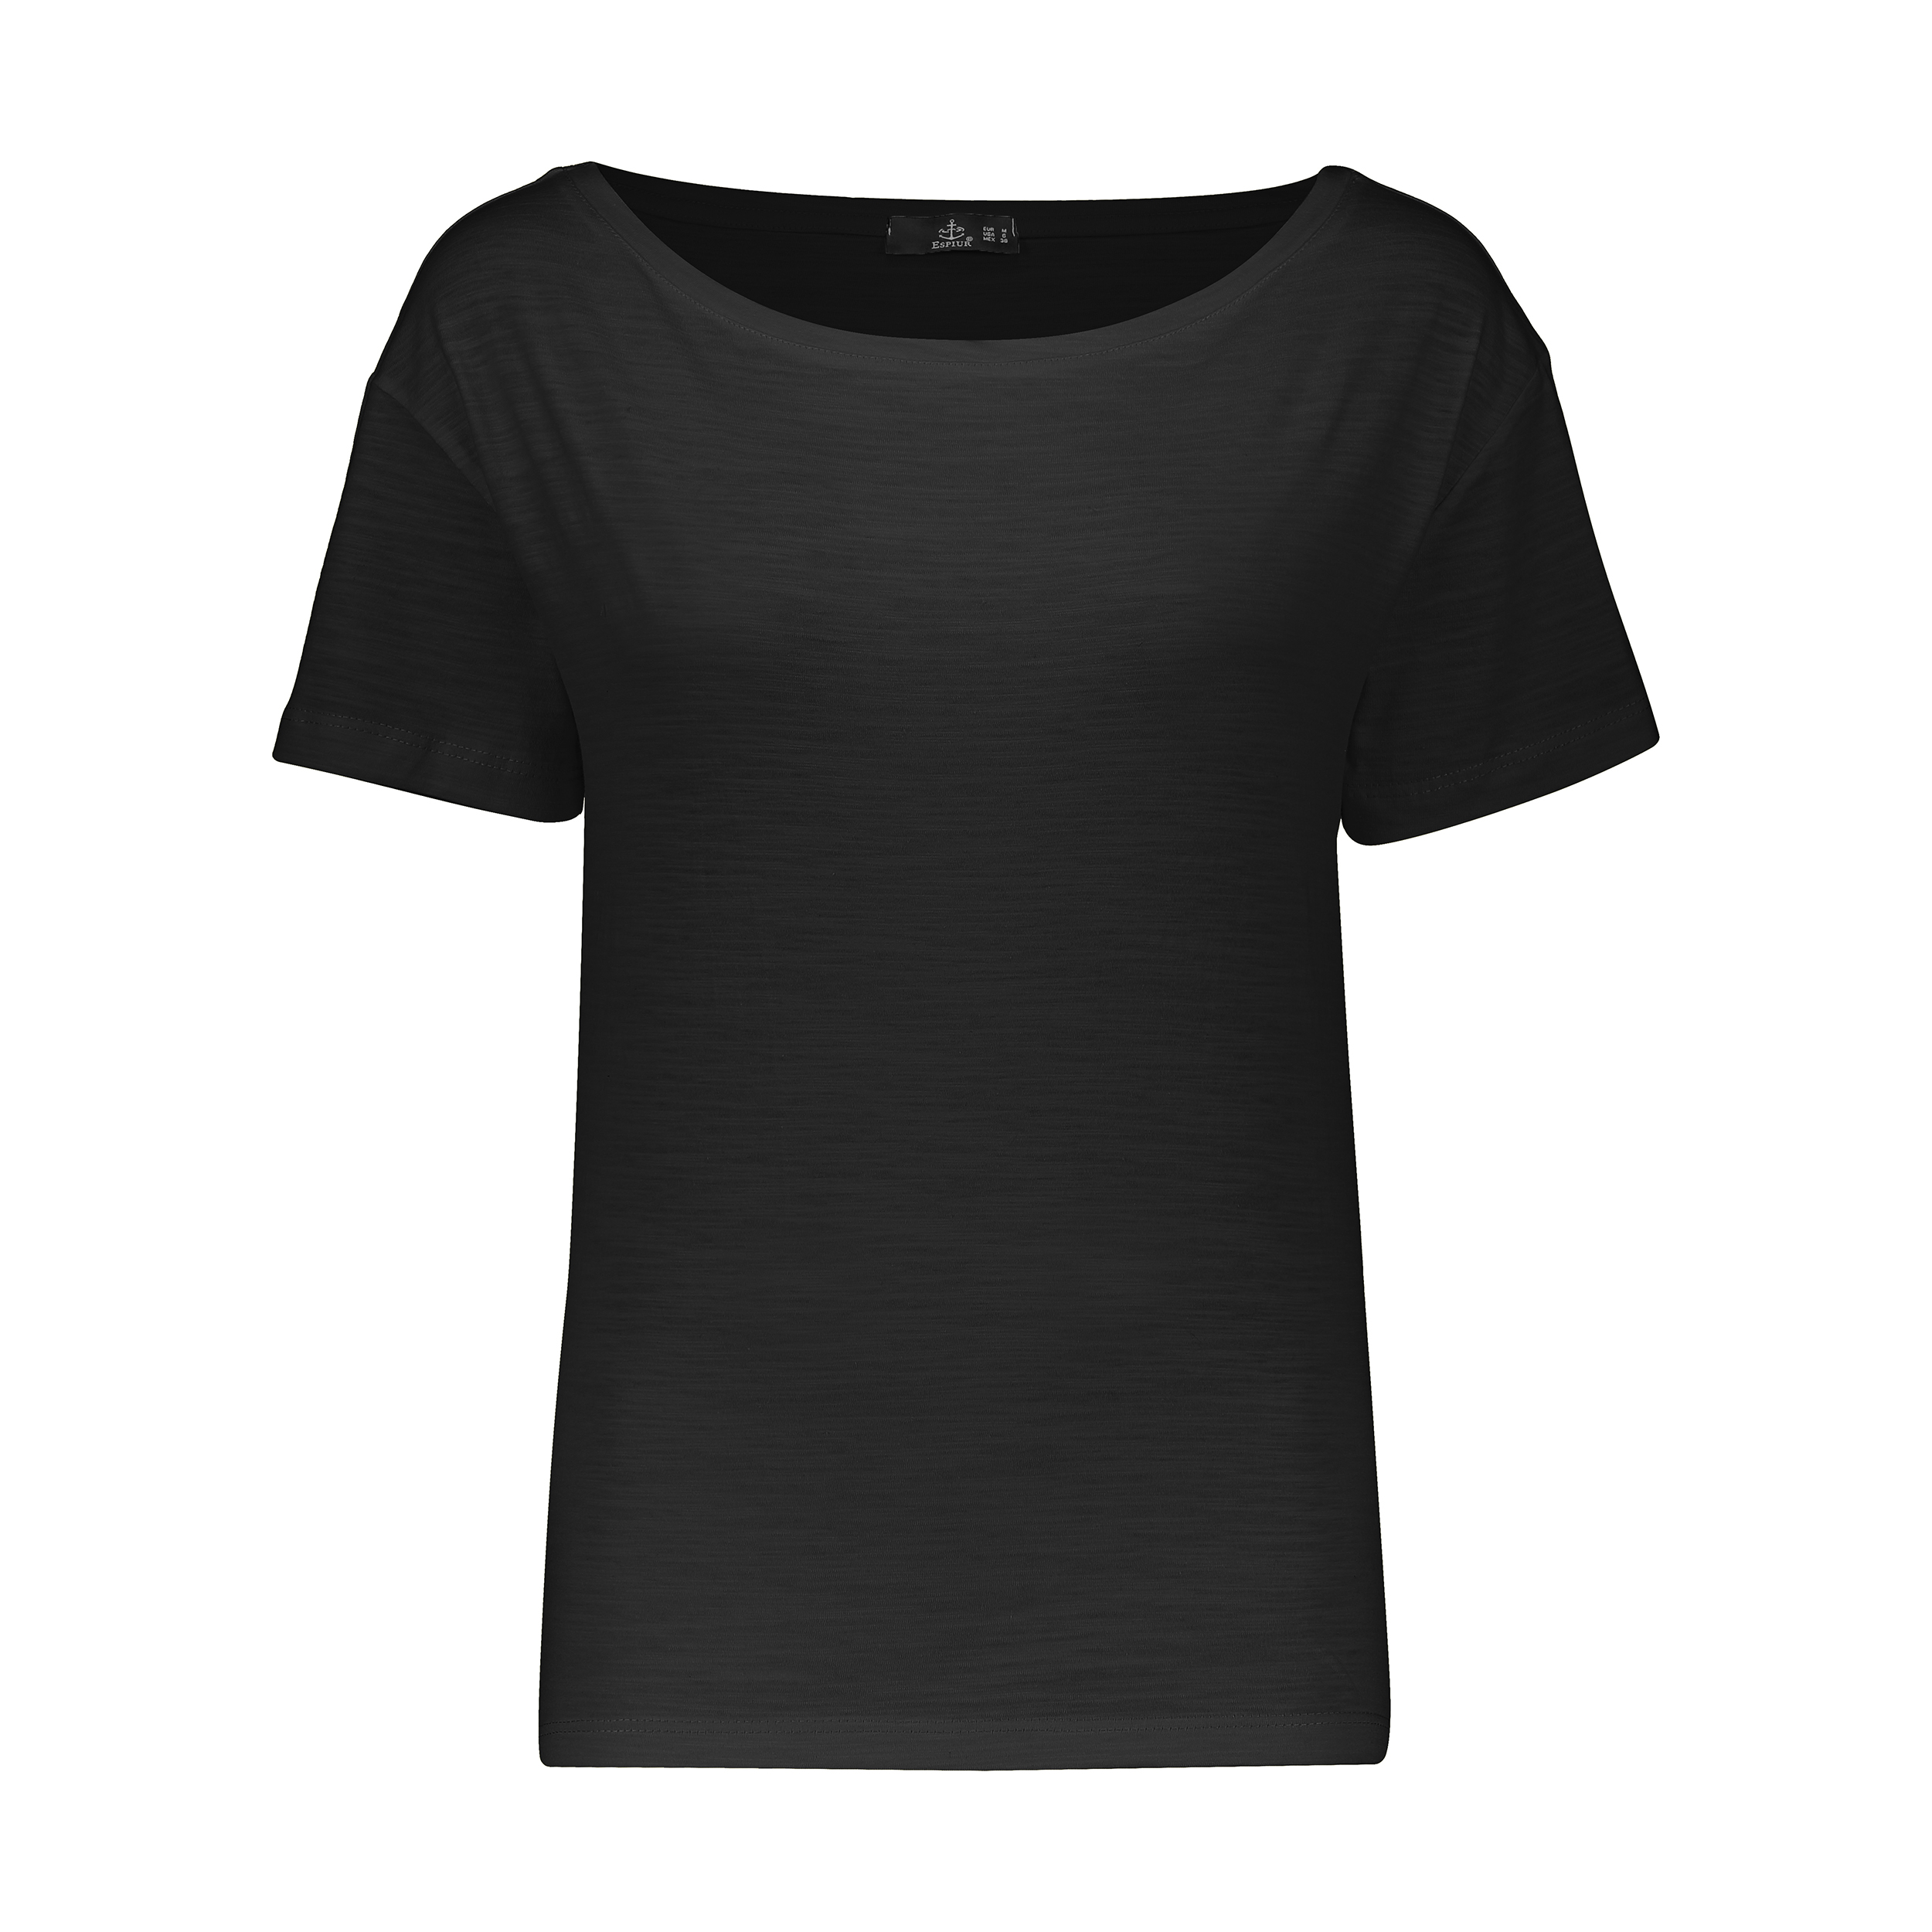 تی شرت زنانه اسپیور مدل 2W04M-01 -  - 1